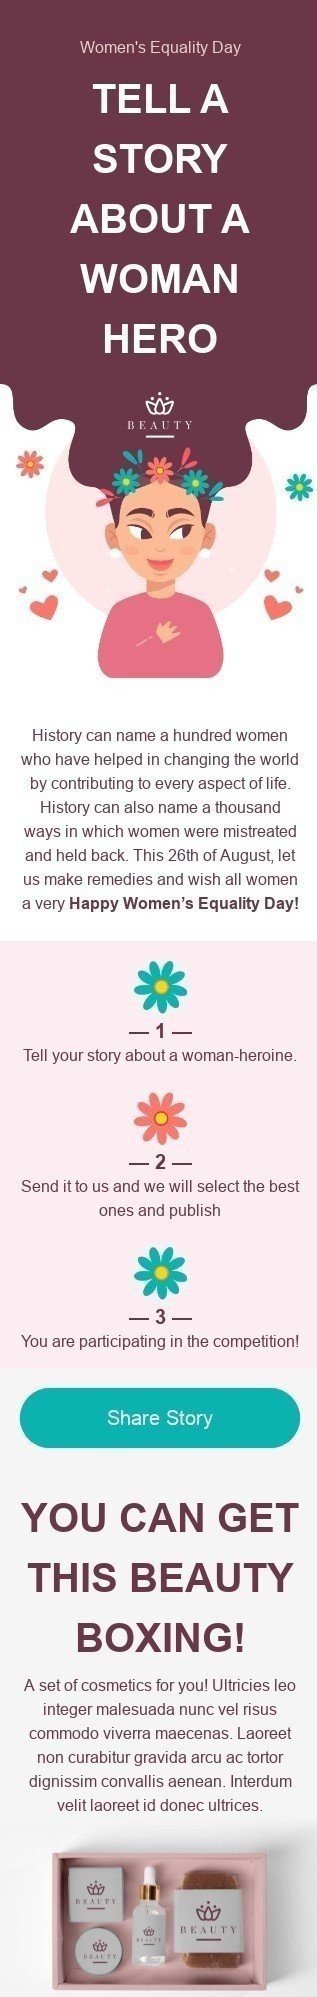 Plantilla de correo electrónico «Cuenta tu historia» de Día Internacional de la Mujer para la industria de Belleza y cuidado personal Vista de móvil